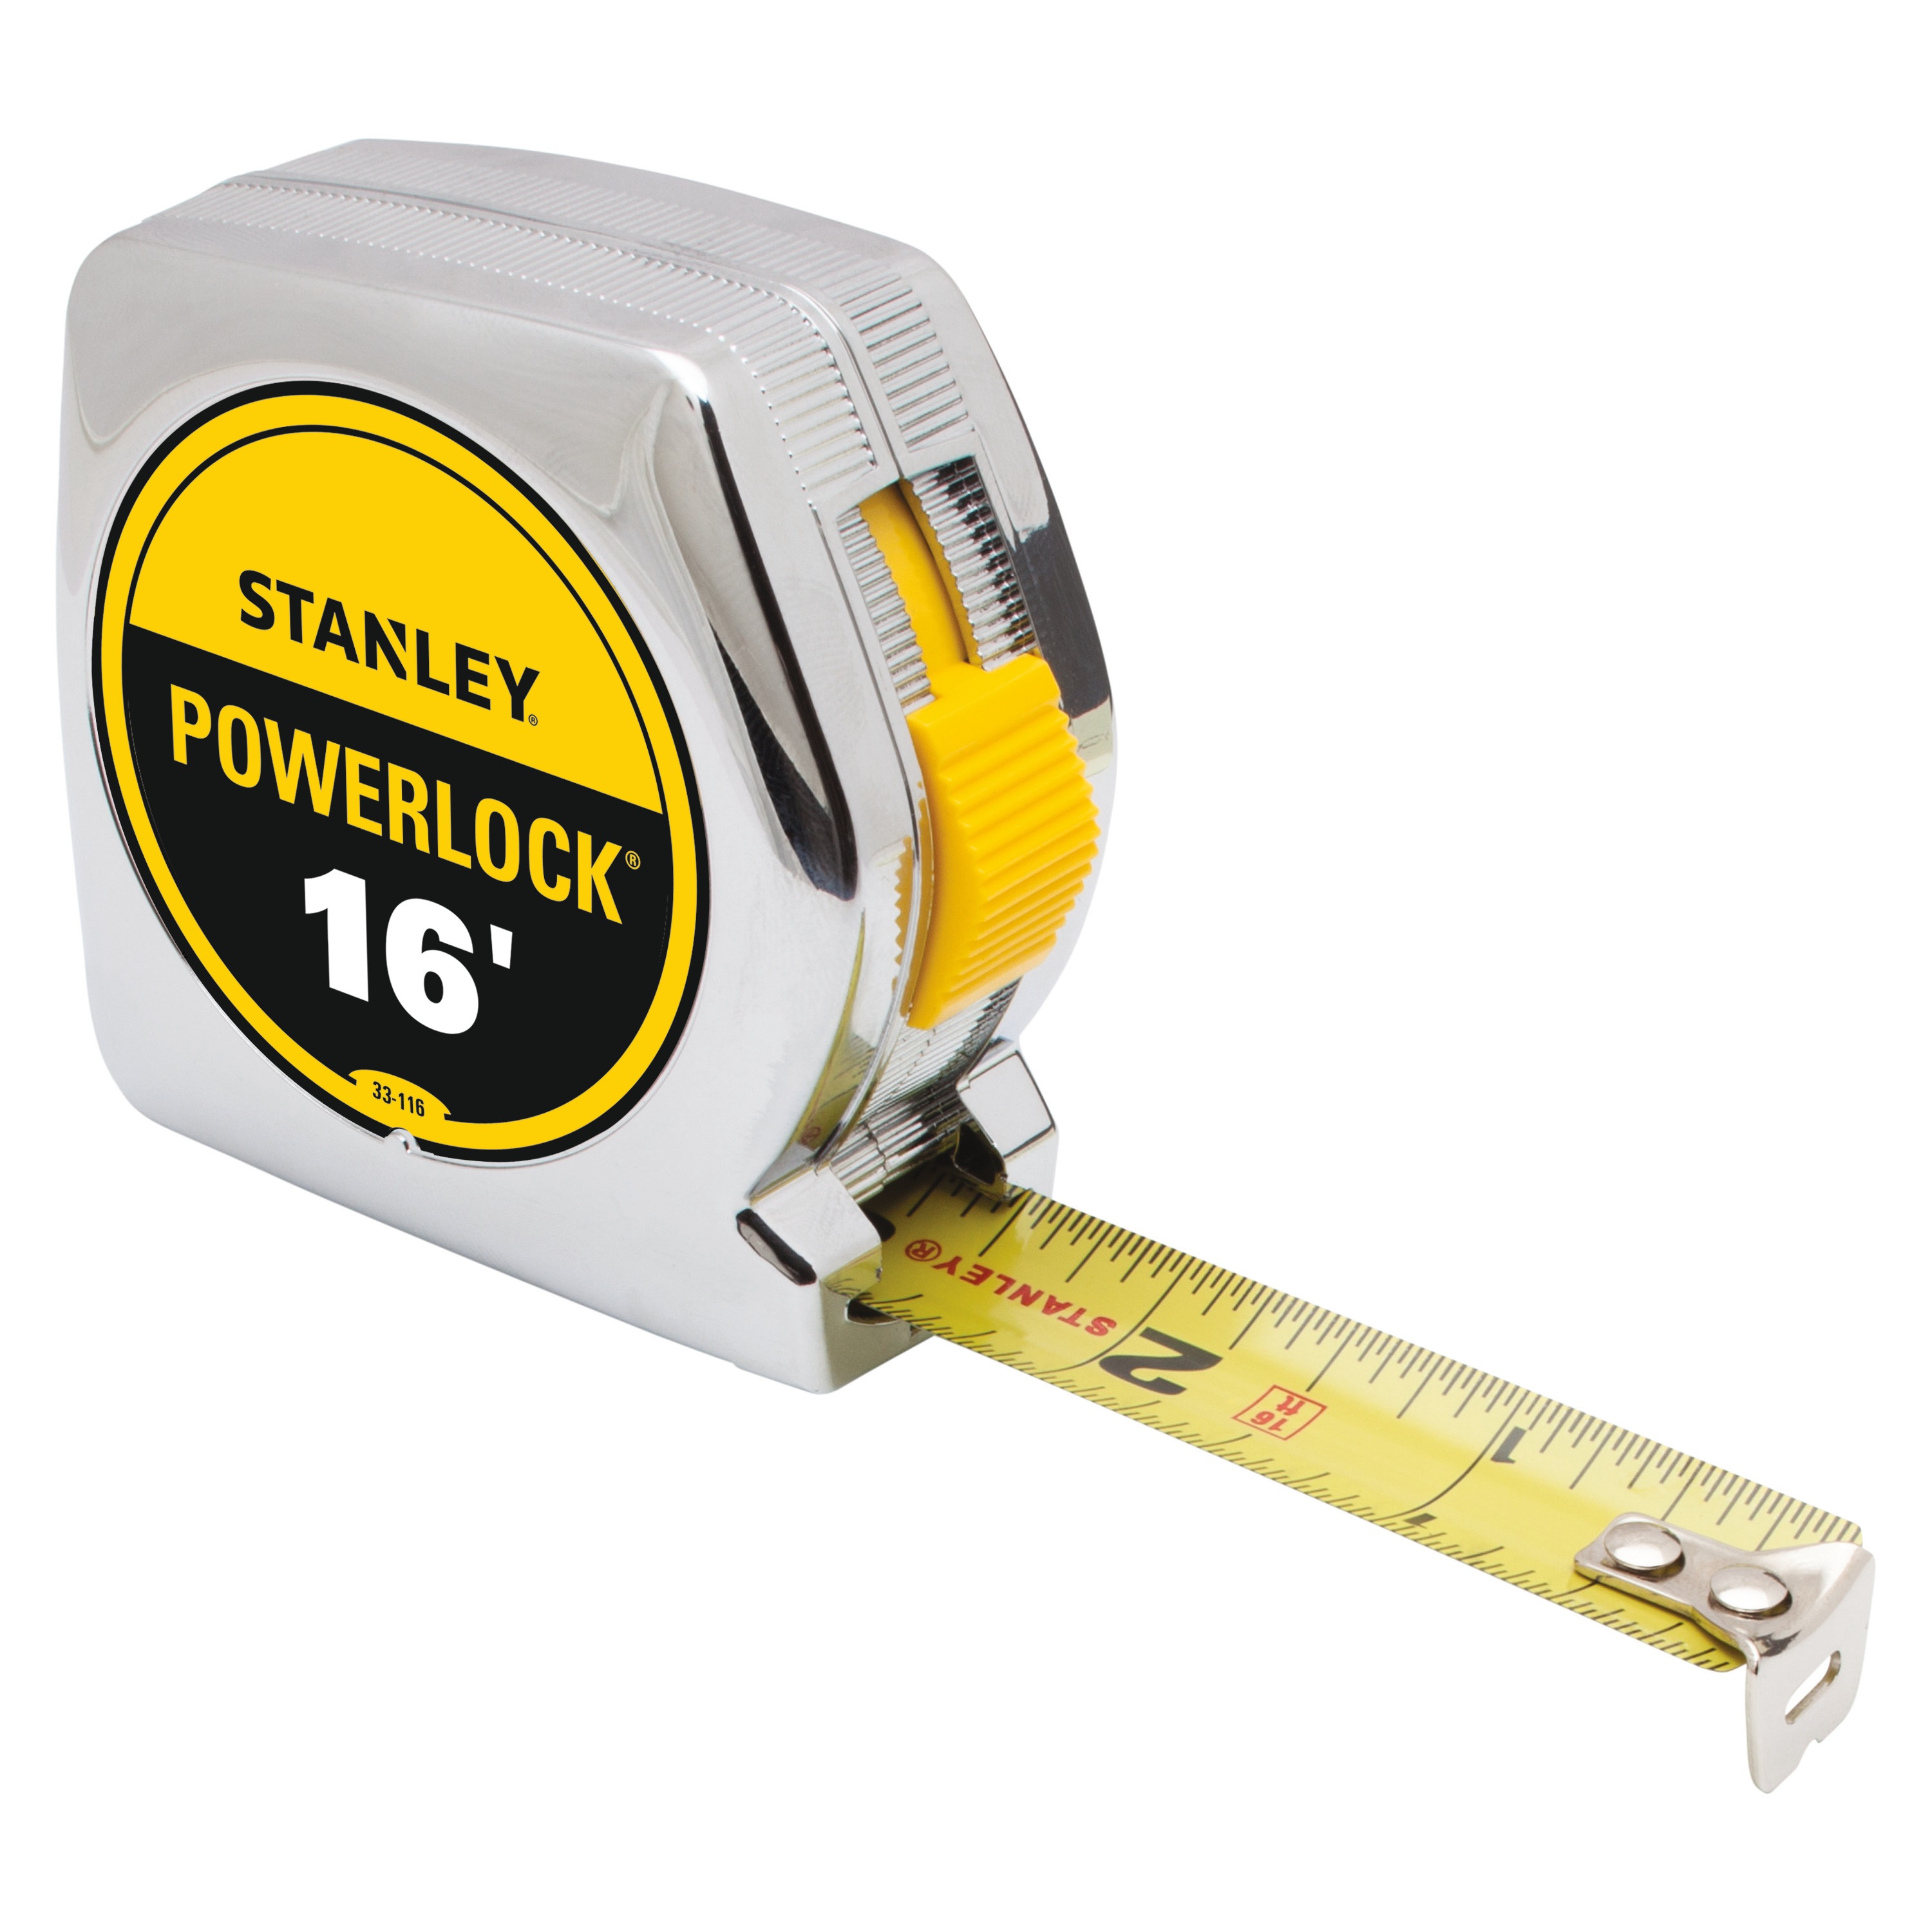 Stanley Tools - 16 ft PowerLock Tape Measure - 33-116